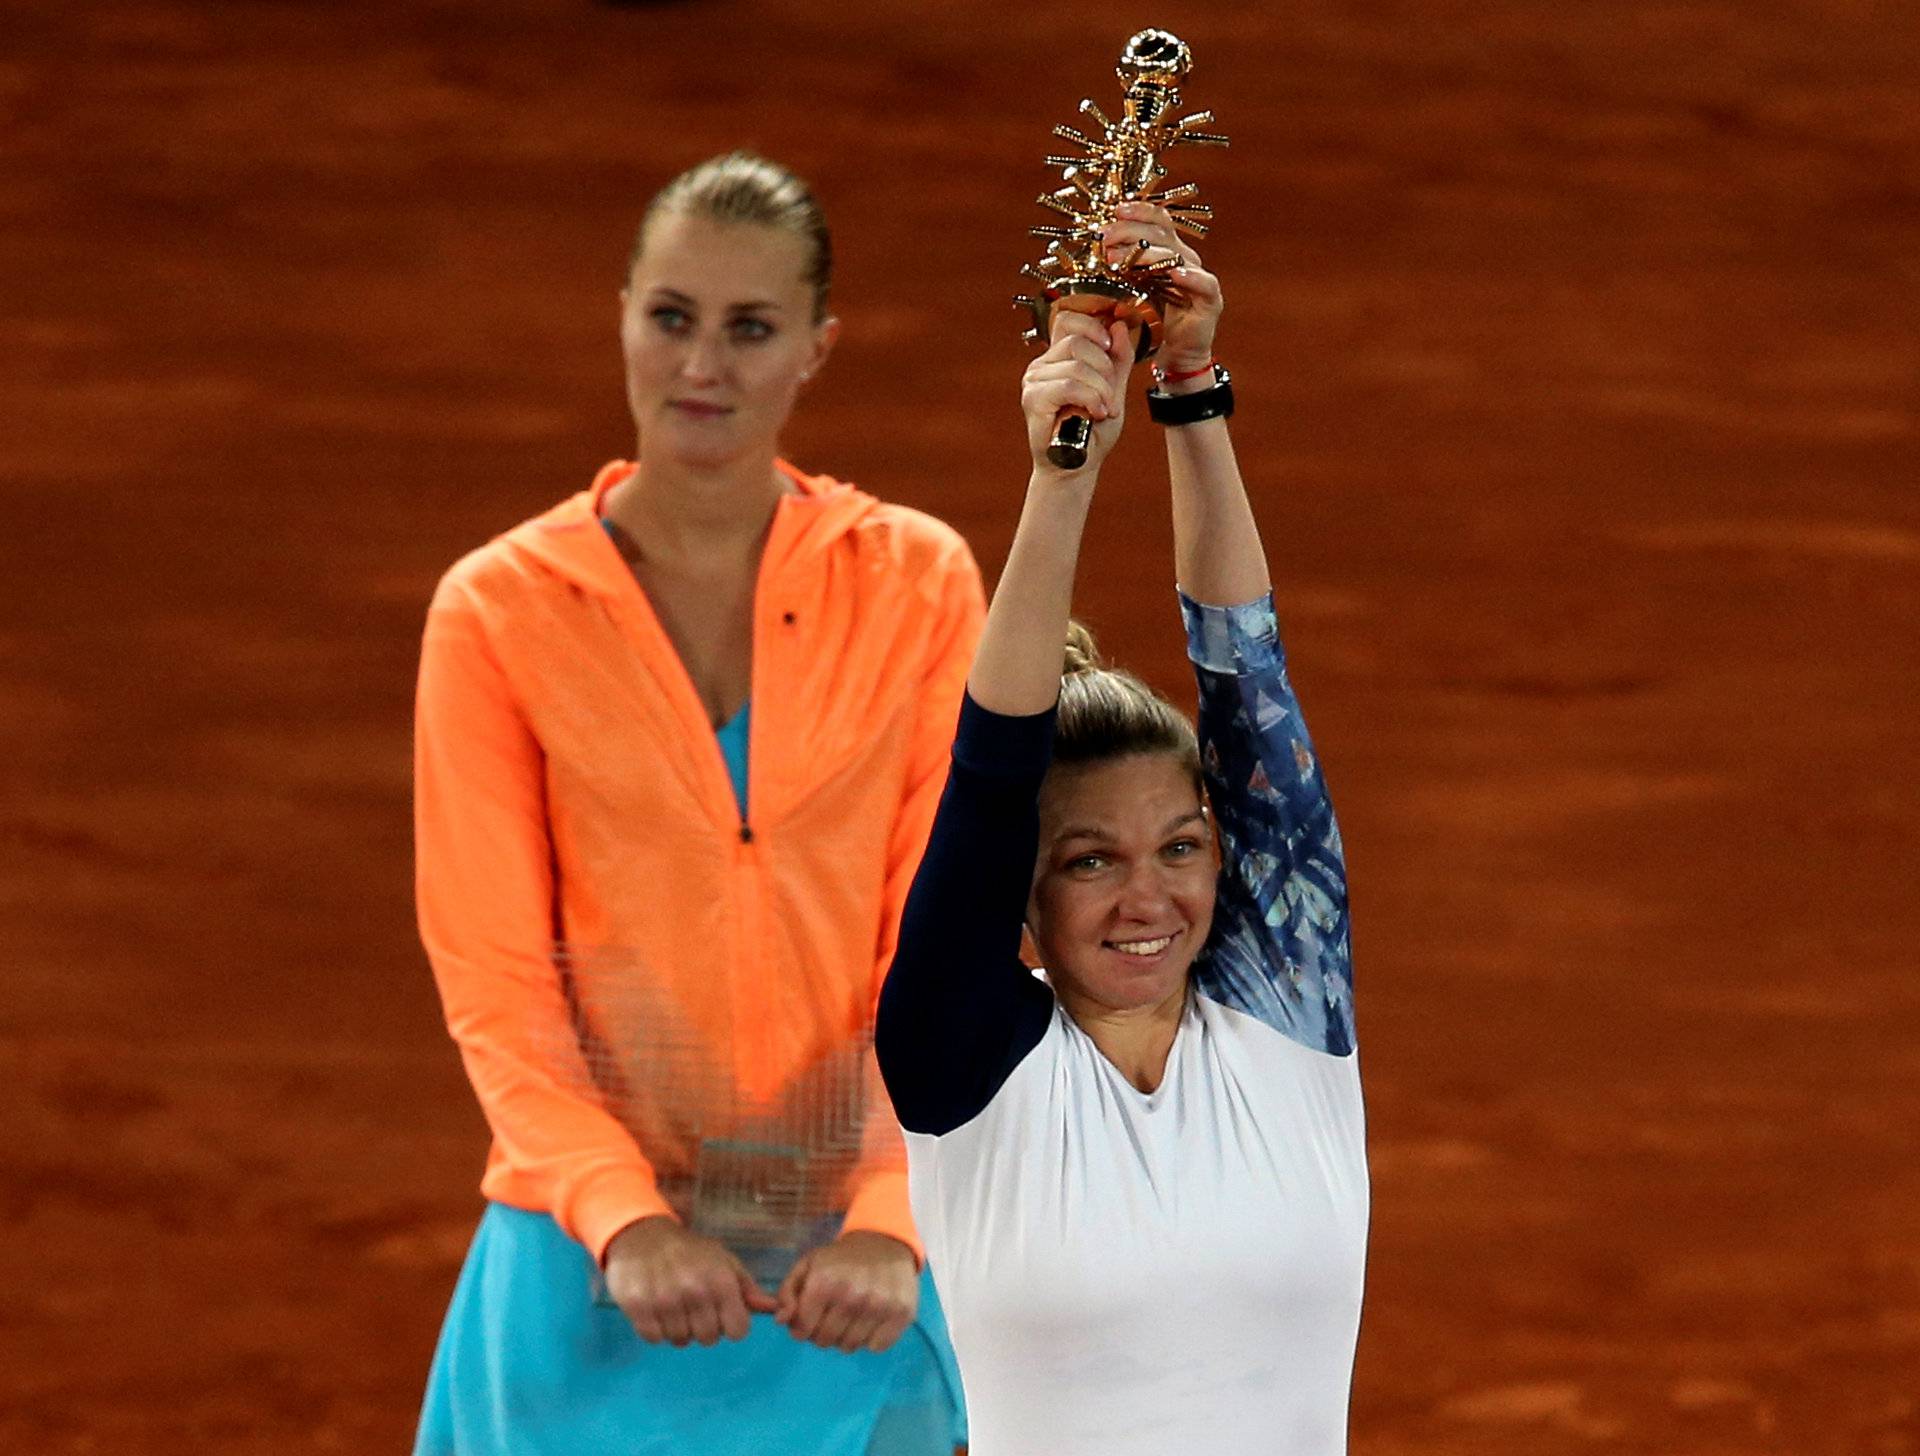 Tennis - WTA - Madrid Open - Women's Singles Final